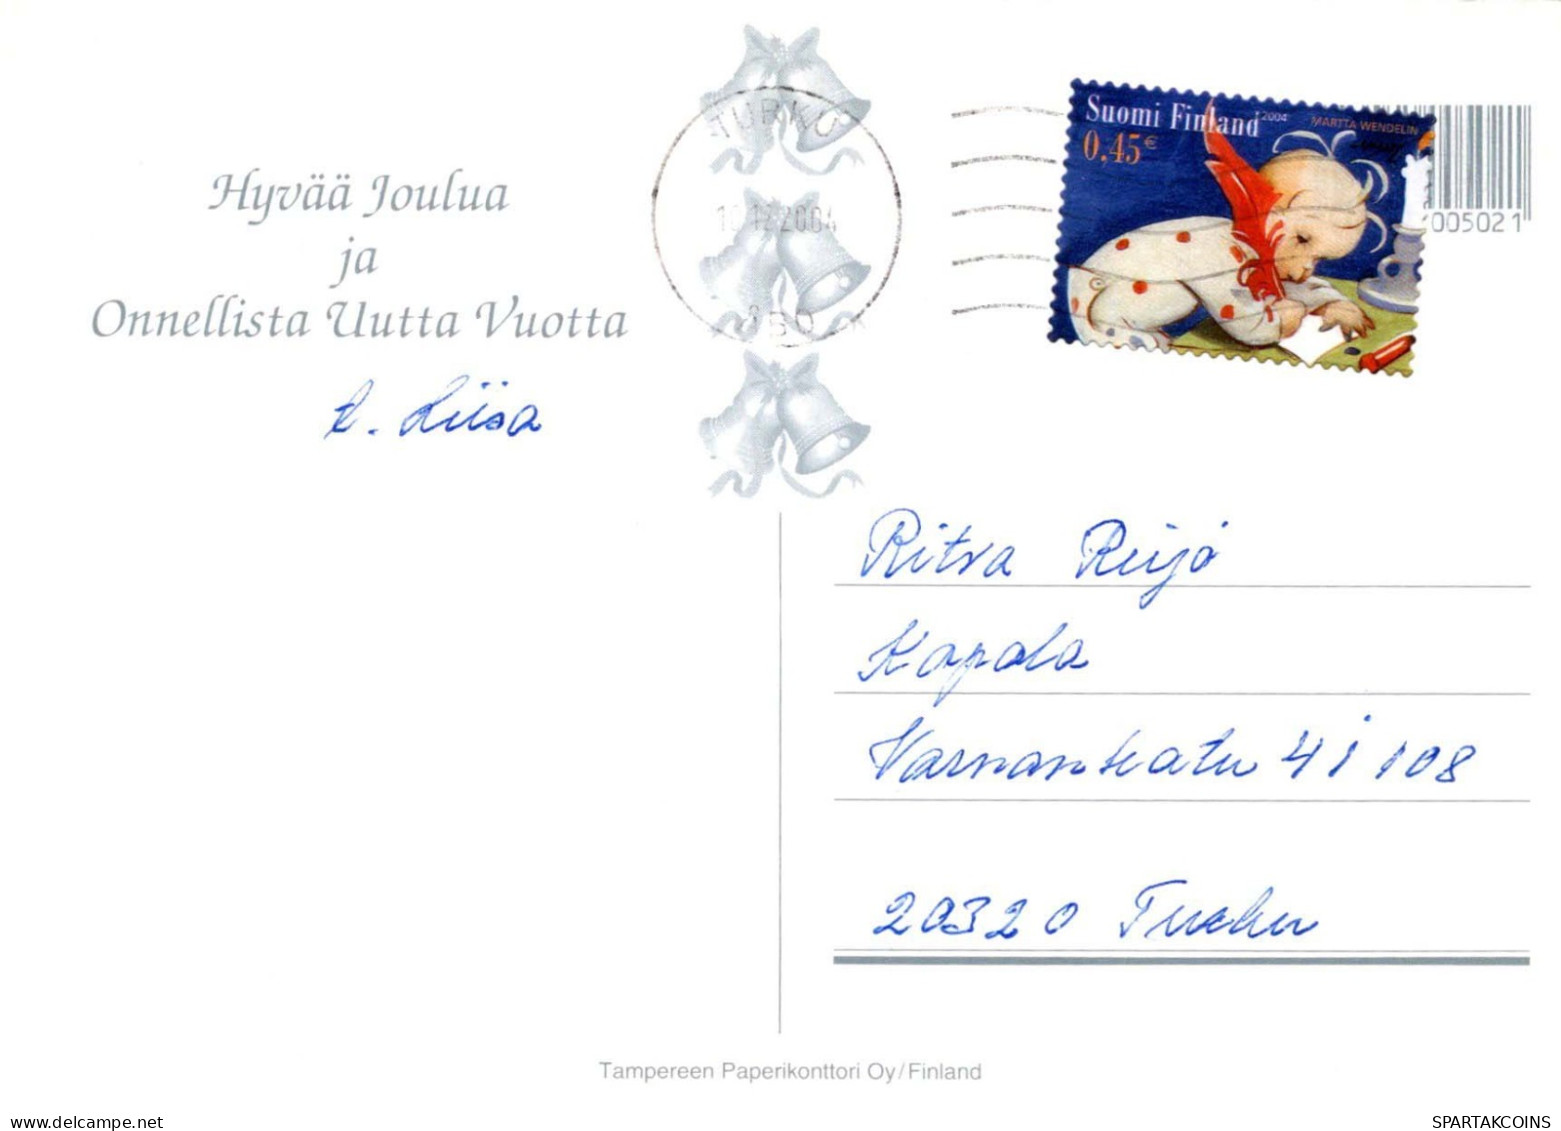 PÈRE NOËL Bonne Année Noël Vintage Carte Postale CPSM #PBL304.FR - Kerstman